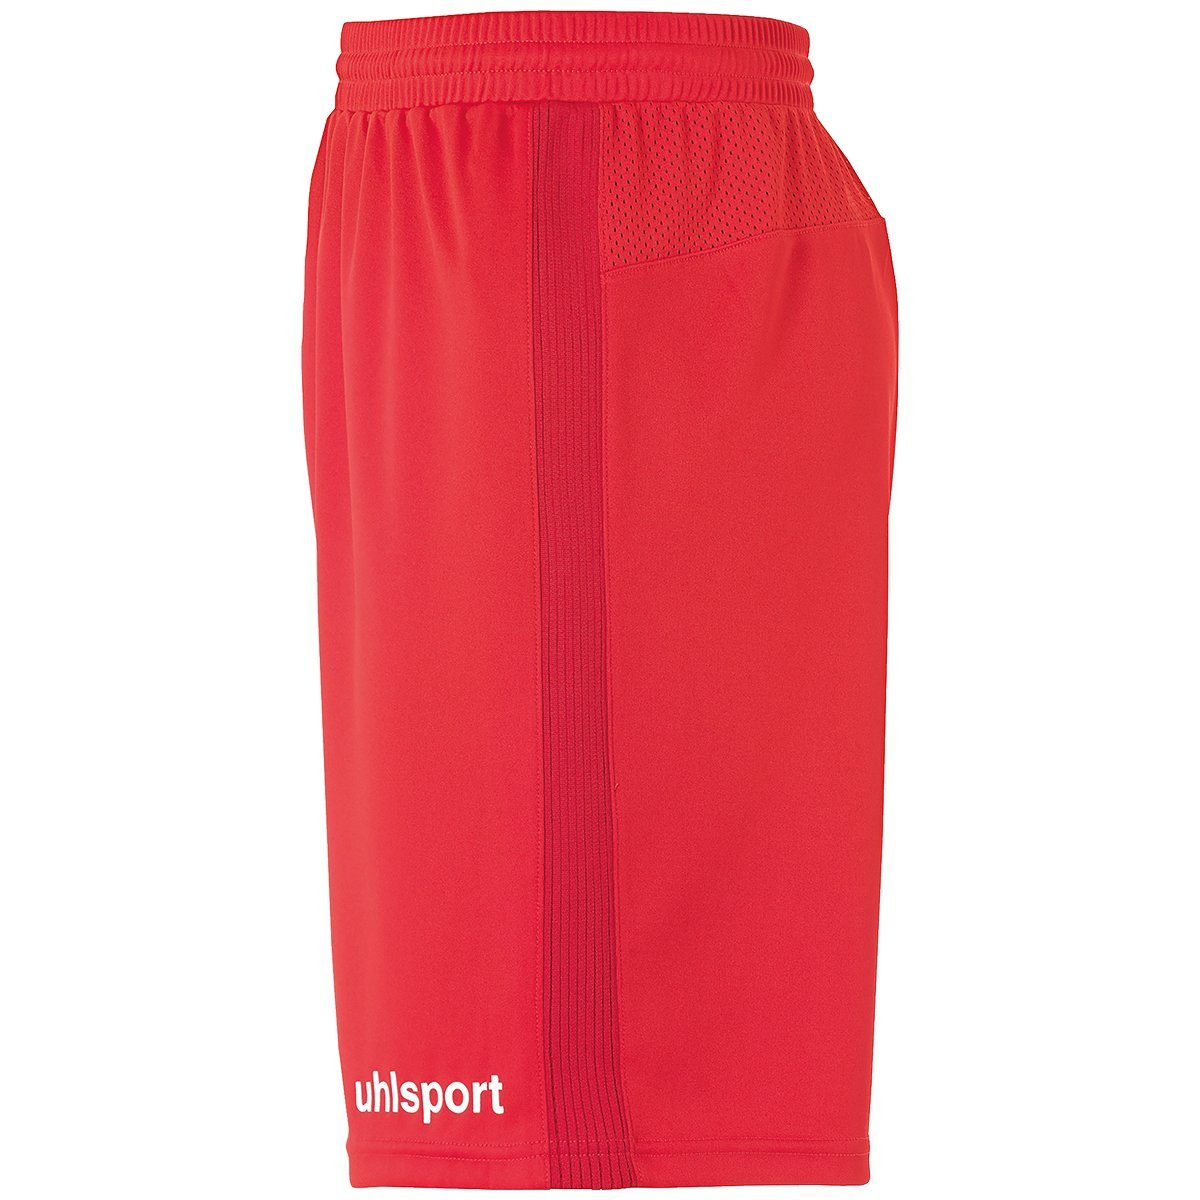 rot/weiß SHORTS uhlsport Shorts uhlsport Shorts PERFORMANCE